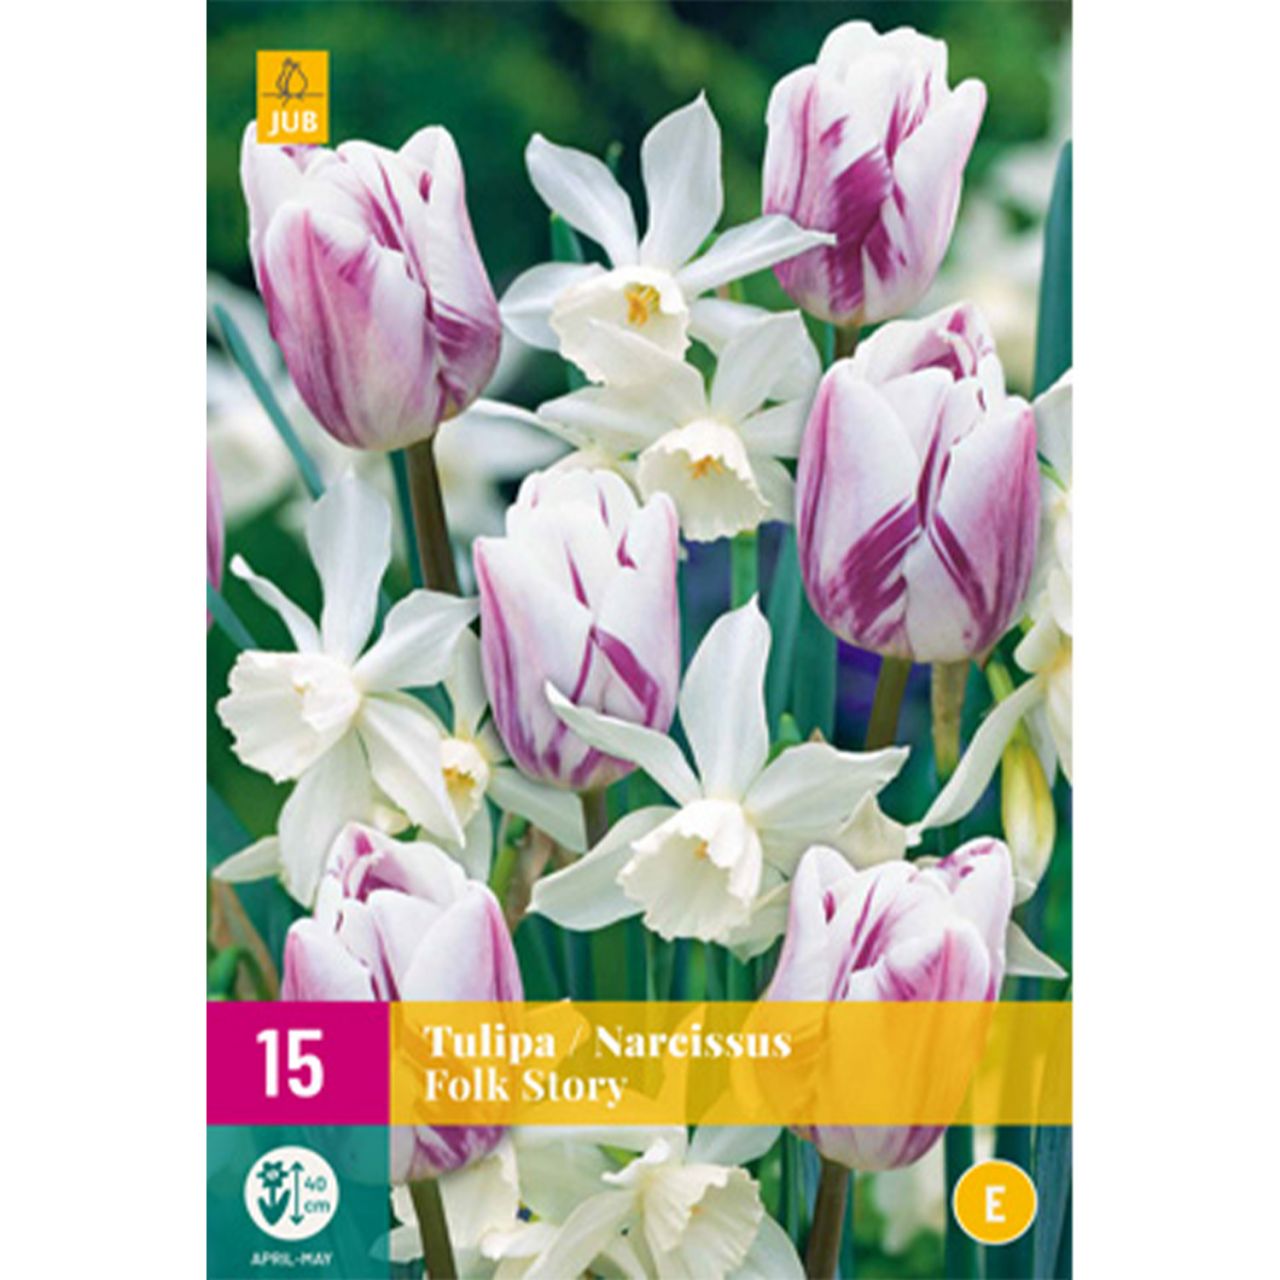 Kategorie <b>Herbst-Blumenzwiebeln </b> - Tulpen & Narzissen Mischung 'Folk Story' - 15 Stück - Tulipa & Narcissus 'Folk Story'